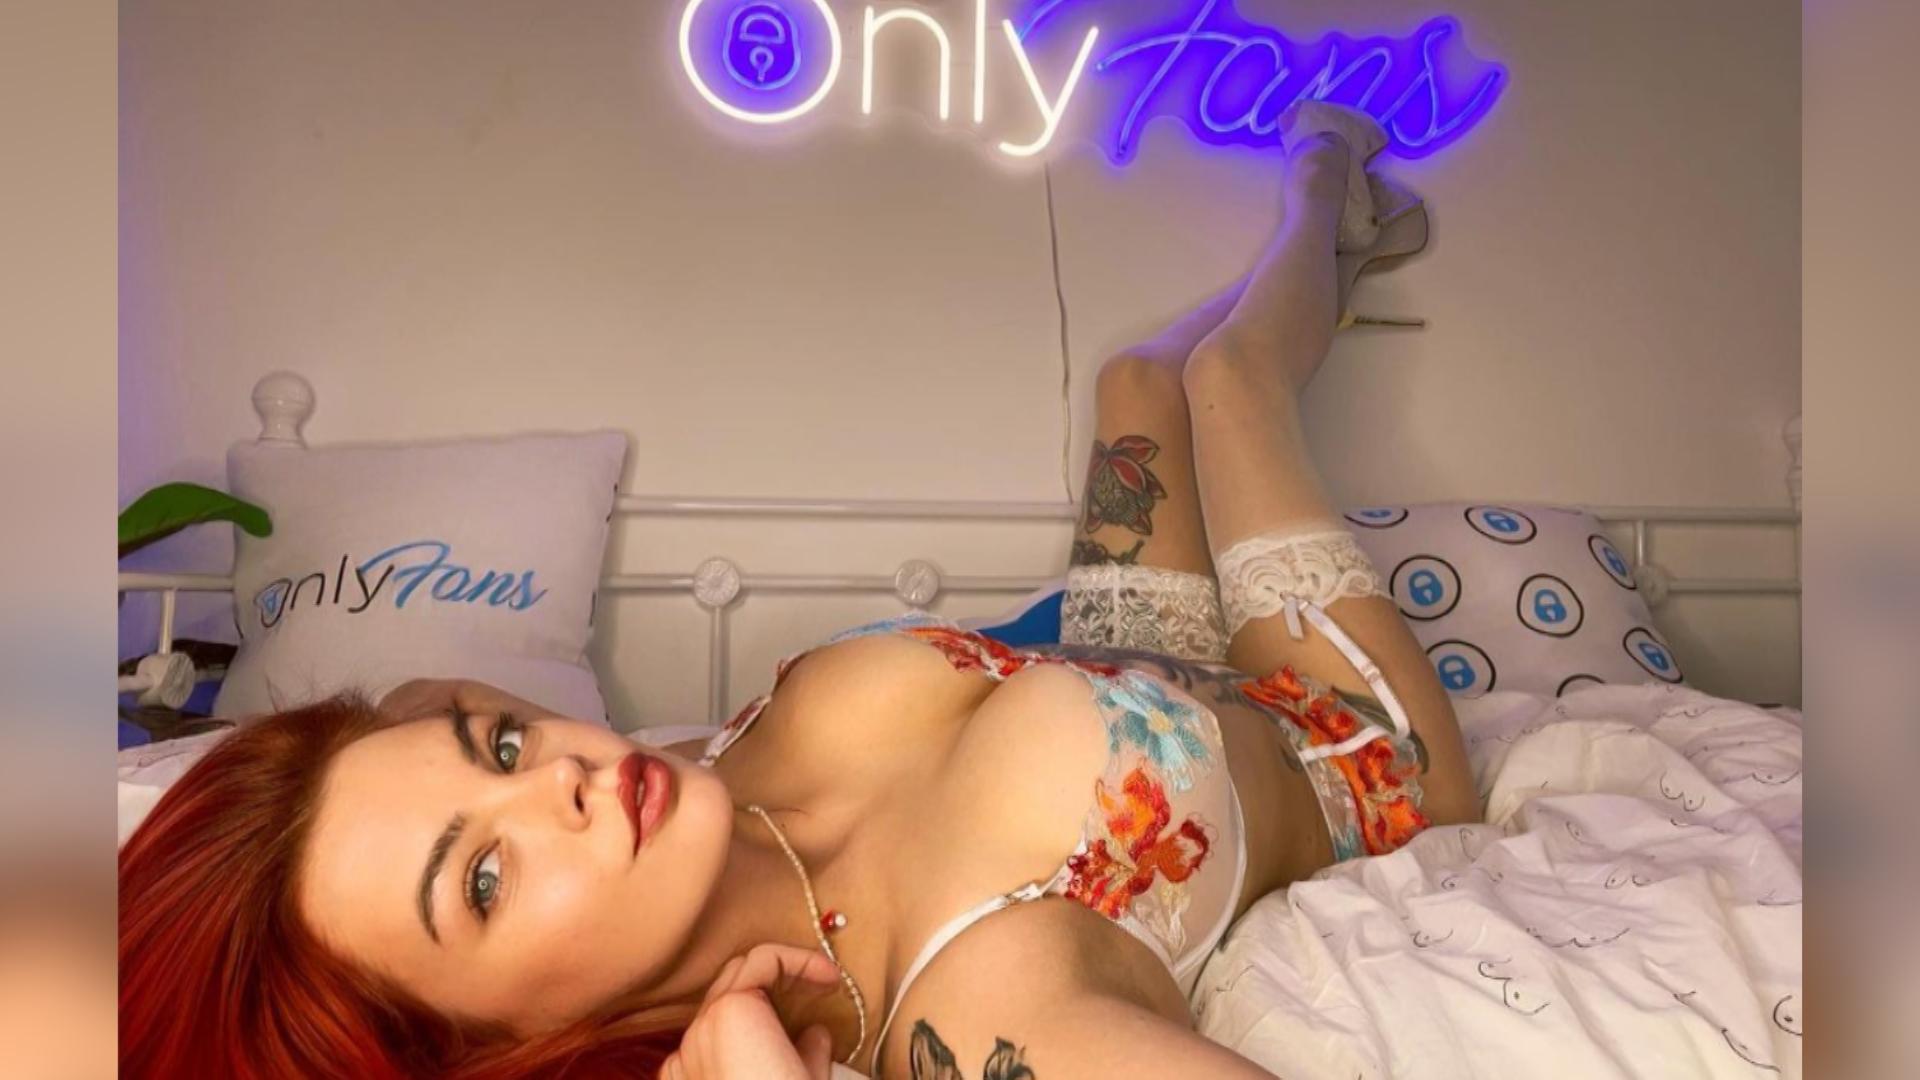 OnlyFans-Model kauft Häuser mit Nacktbildern Sie hilft ärmeren Familien!